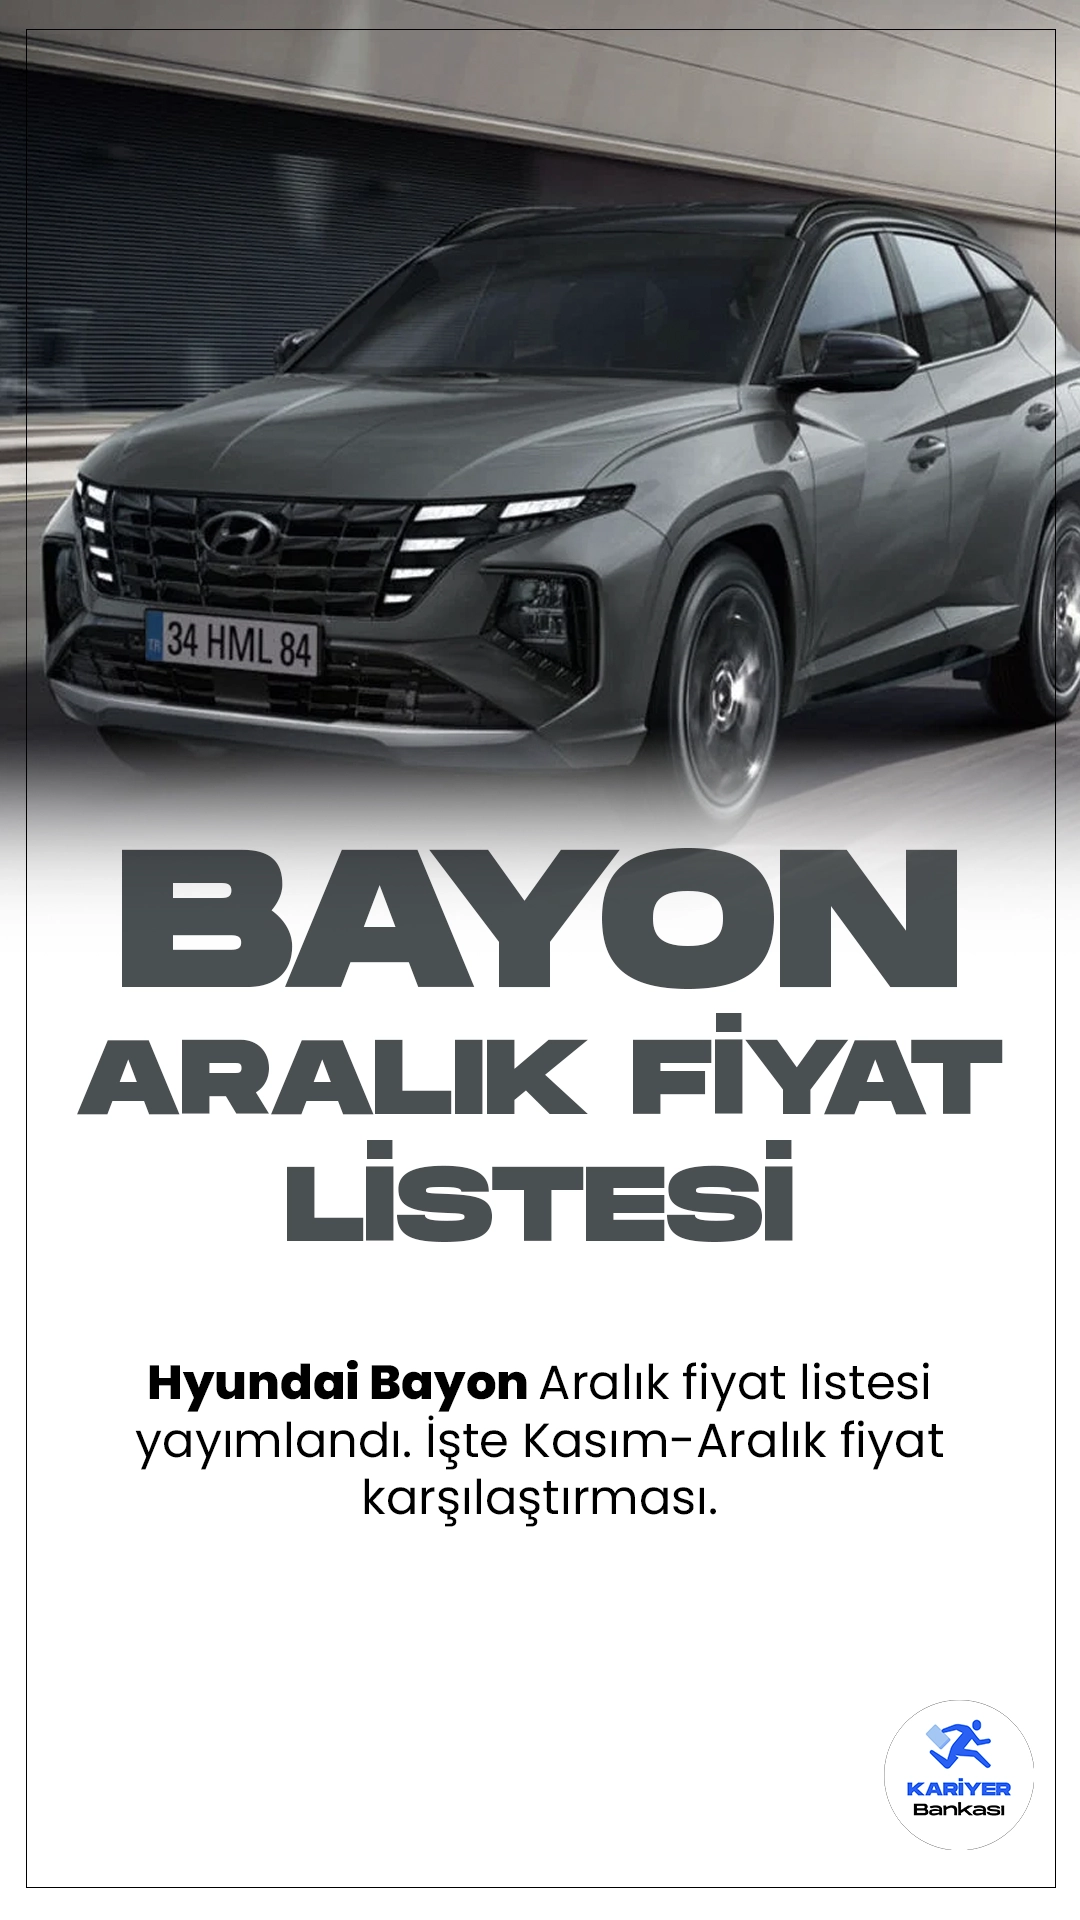 Hyundai Bayon Aralık 2023 Fiyat Listesi Yayımlandı.Hyundai'nin kompakt SUV segmentine getirdiği yeni soluk, Bayon modeli, şehir içi kullanımın yanı sıra enerjik tasarımı ve geniş iç hacmiyle dikkat çekiyor. Güçlü ve dinamik çizgileriyle öne çıkan Bayon, markanın yenilikçi tasarım anlayışını yansıtarak sürücülere modern bir deneyim sunuyor.